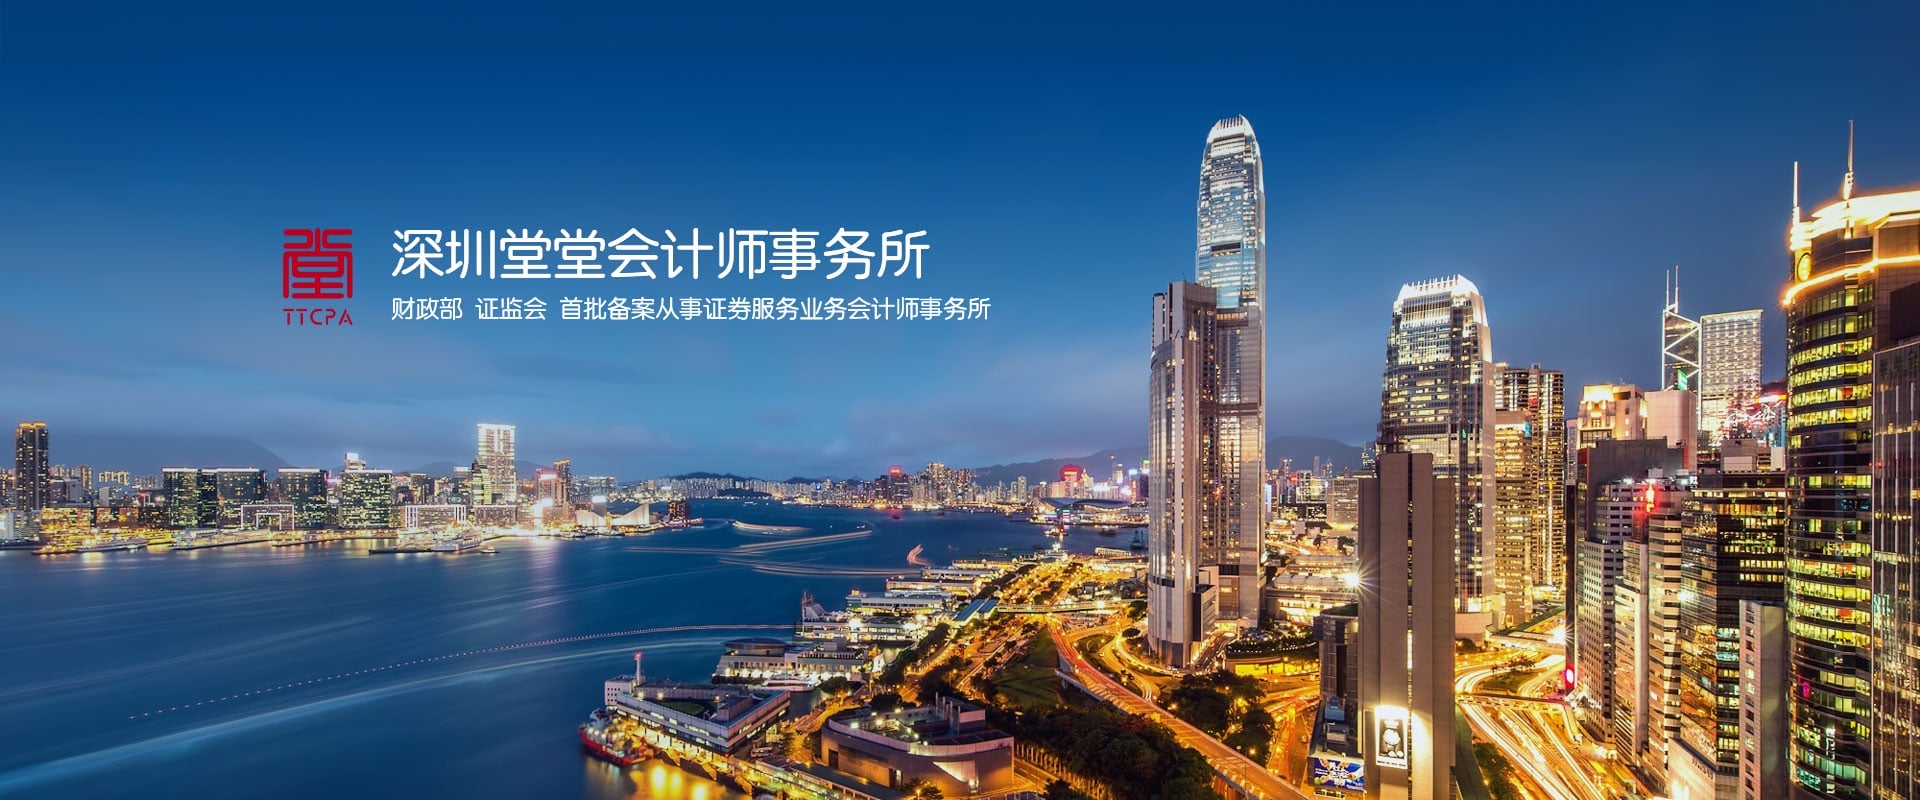 深圳堂堂会计师事务所已经具备新三板证券服务业务资格